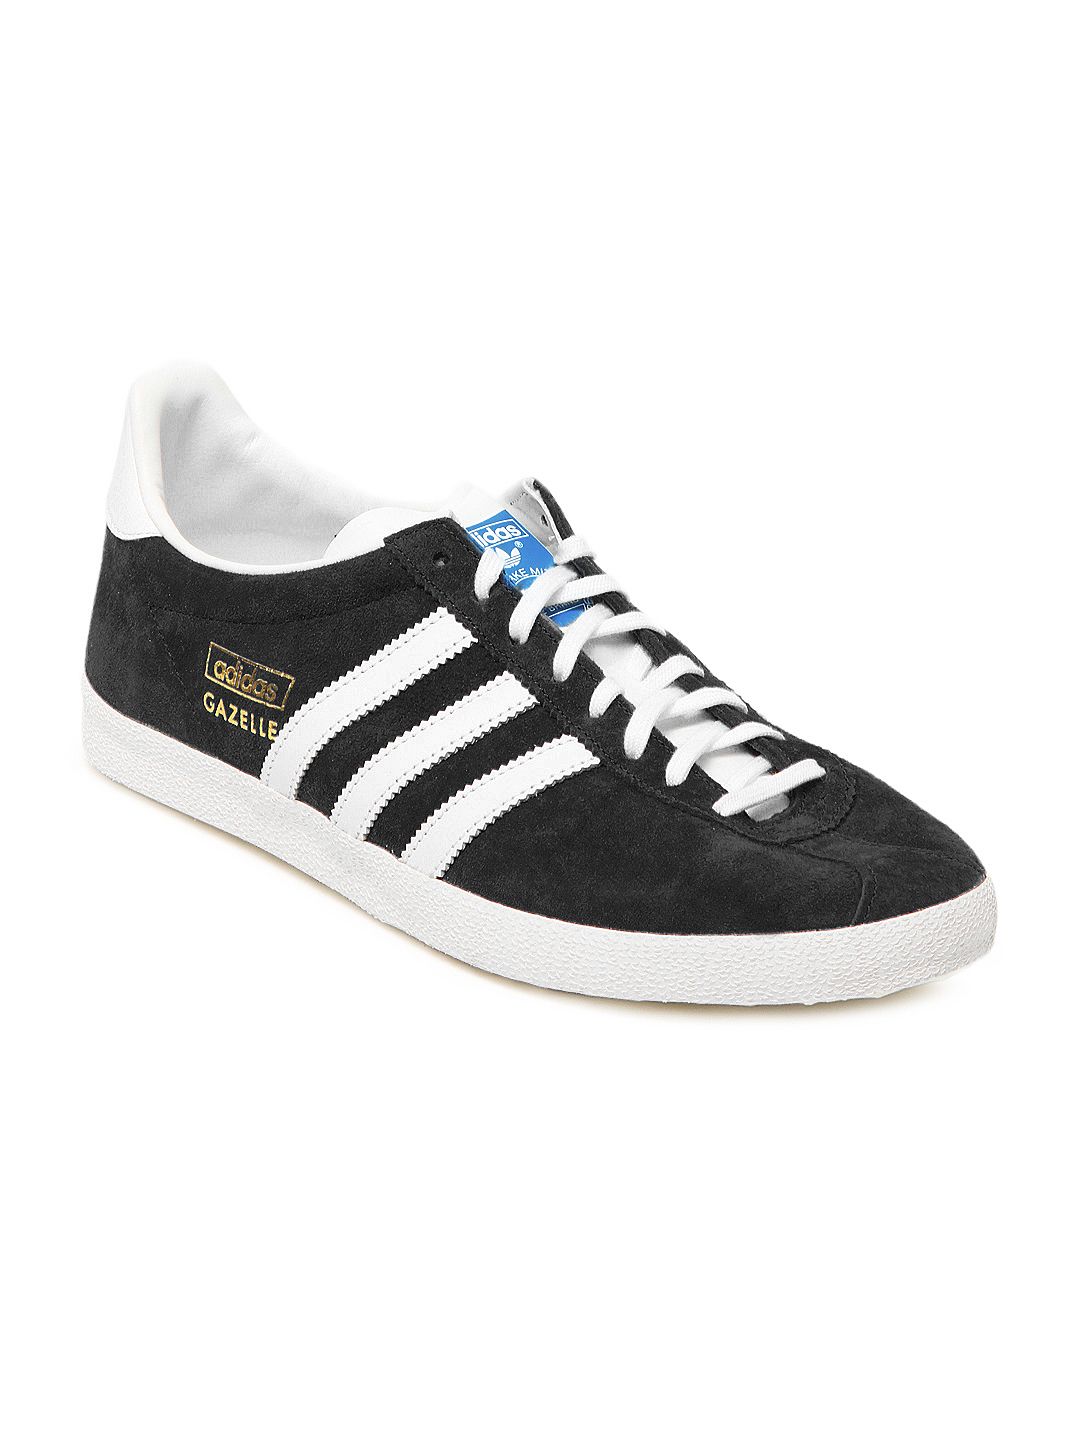 Buy Adidas Originals Men Black Gazelle OG Casual Shoes - 632 - Footwear ...